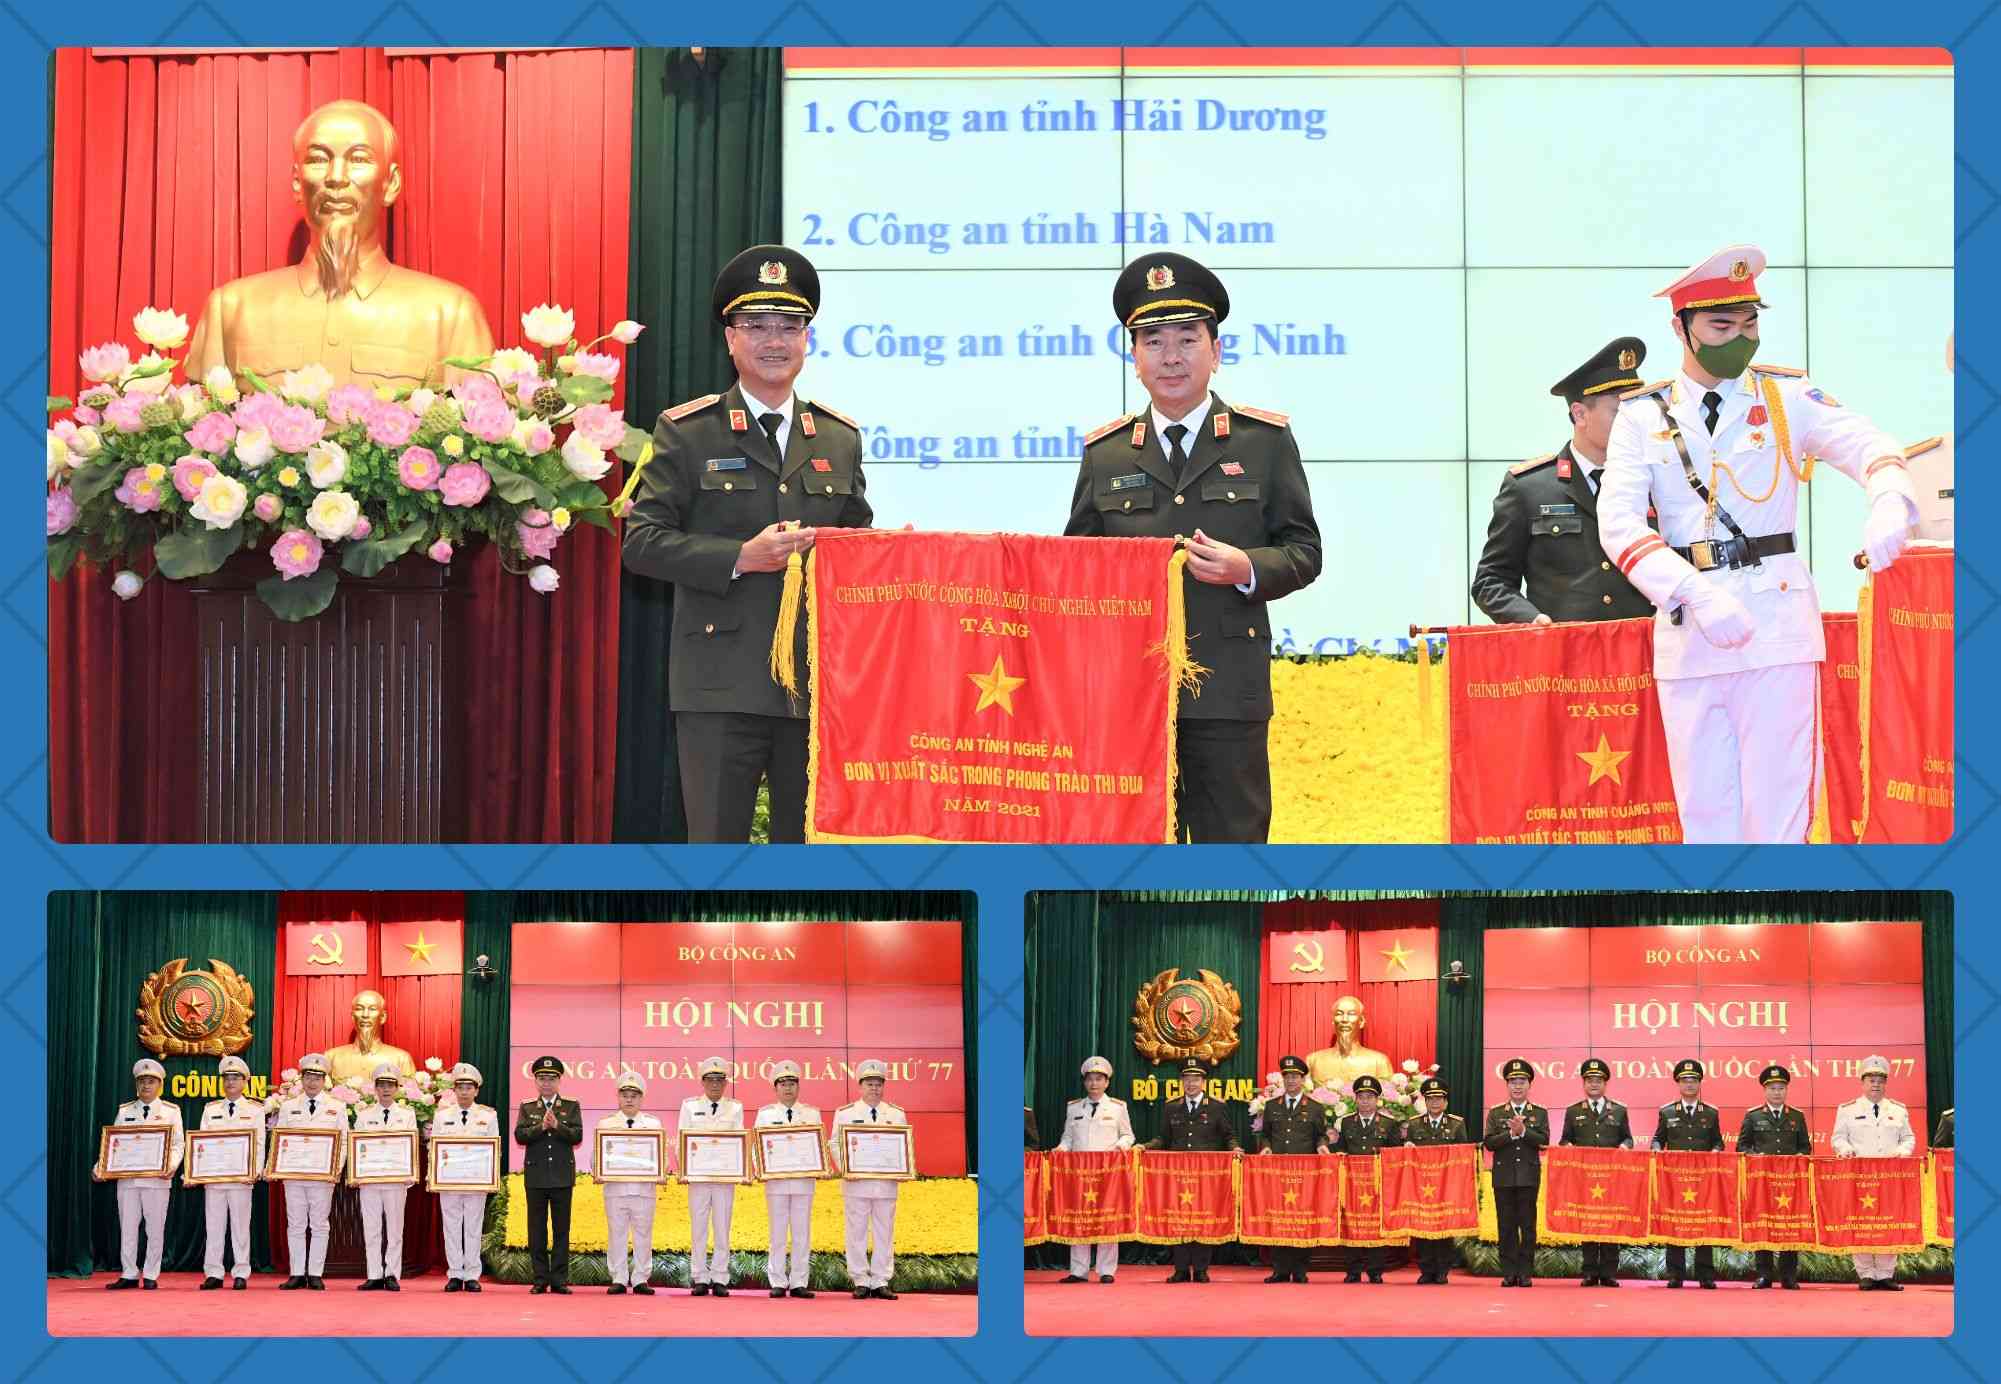 Công an tỉnh Nghệ An nhận danh hiệu Đơn vị xuất sắc trong phong trào thi đua năm 2021 do Chính phủ nước Cộng hoà xã hội chủ nghĩa Việt Nam tặng. Đây là năm thứ  7 liên tiếp, Công an tỉnh Nghệ An giữ vững danh hiệu thi đua cao quý này.